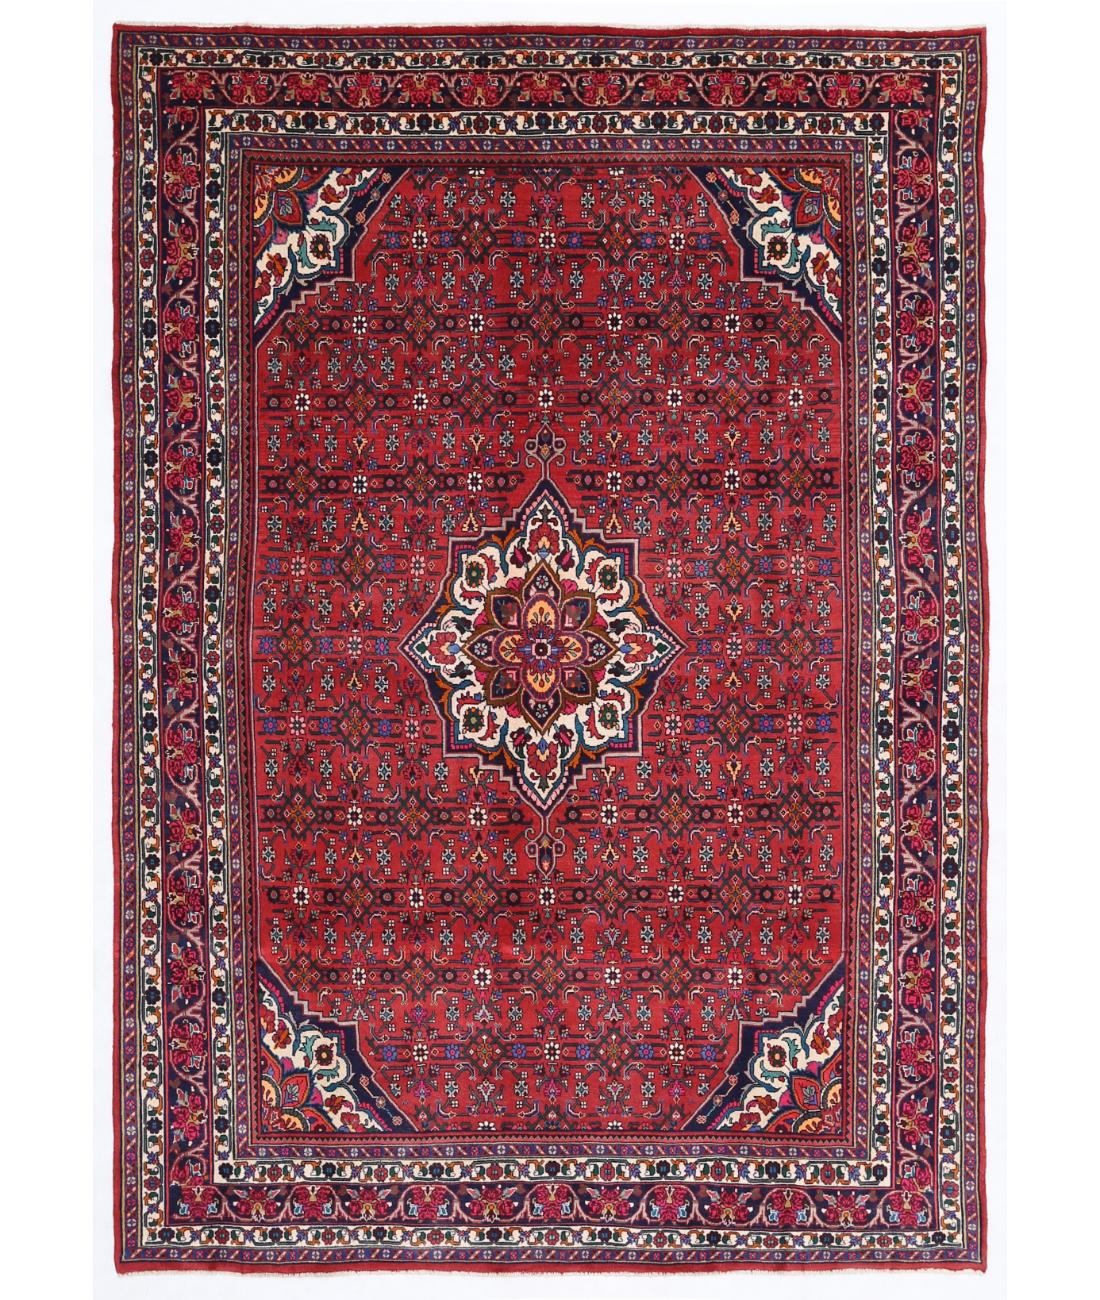 Hand Knotted Persian Bijar Wool Rug - 6'8'' x 9'8'' 6' 8" X 9' 8" ( 203 X 295 ) / Red / Blue